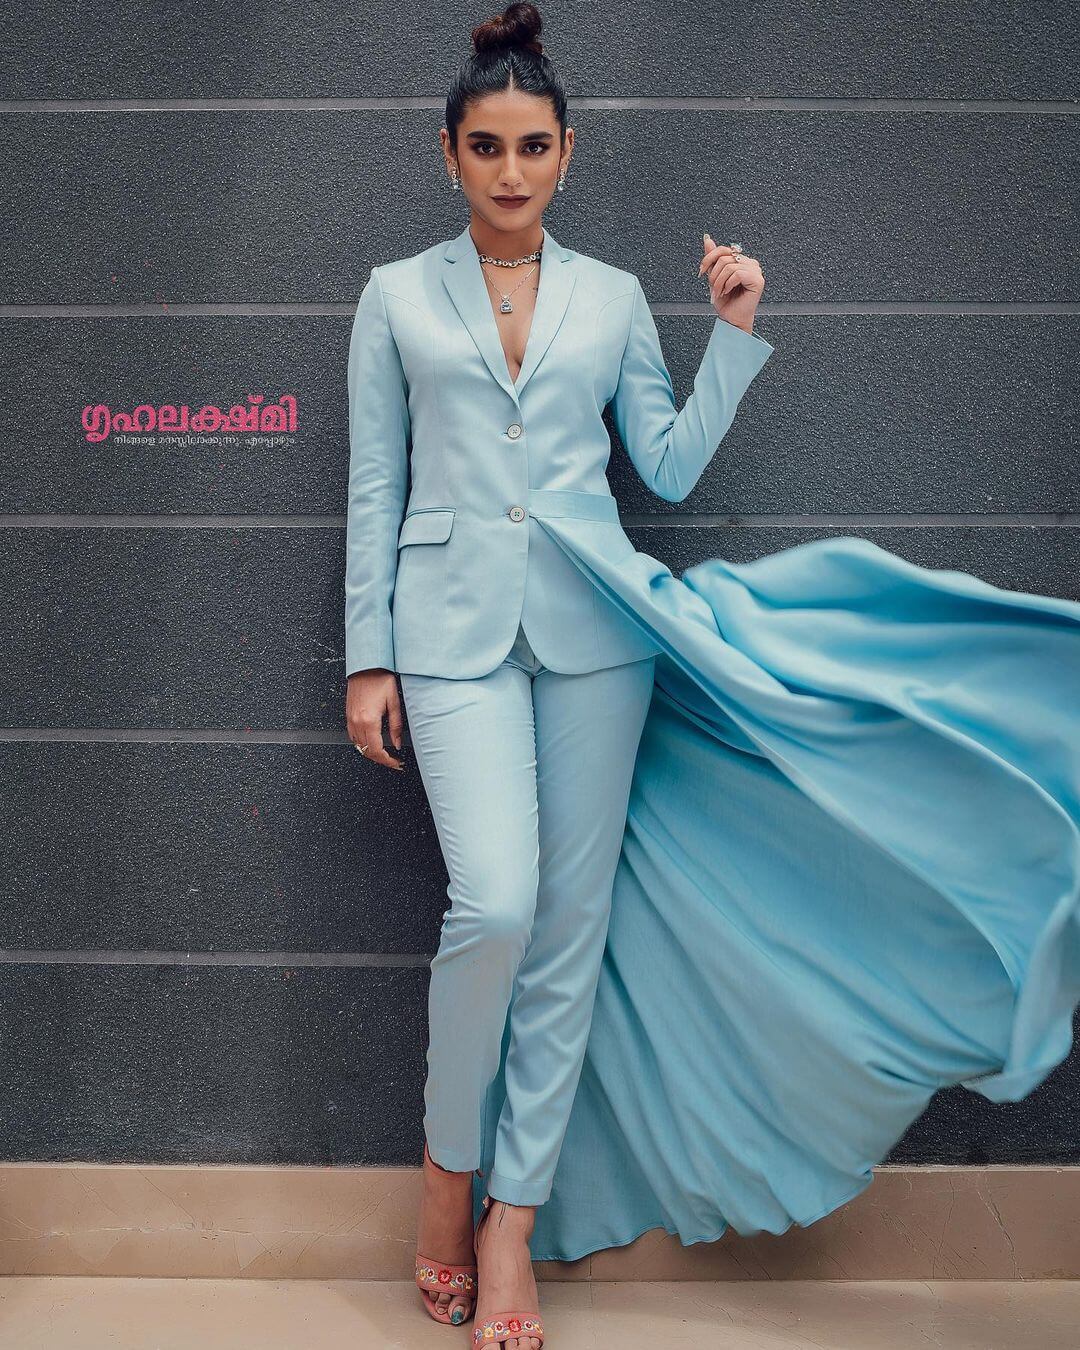 Priya Prakash In The Powder Blue Suit